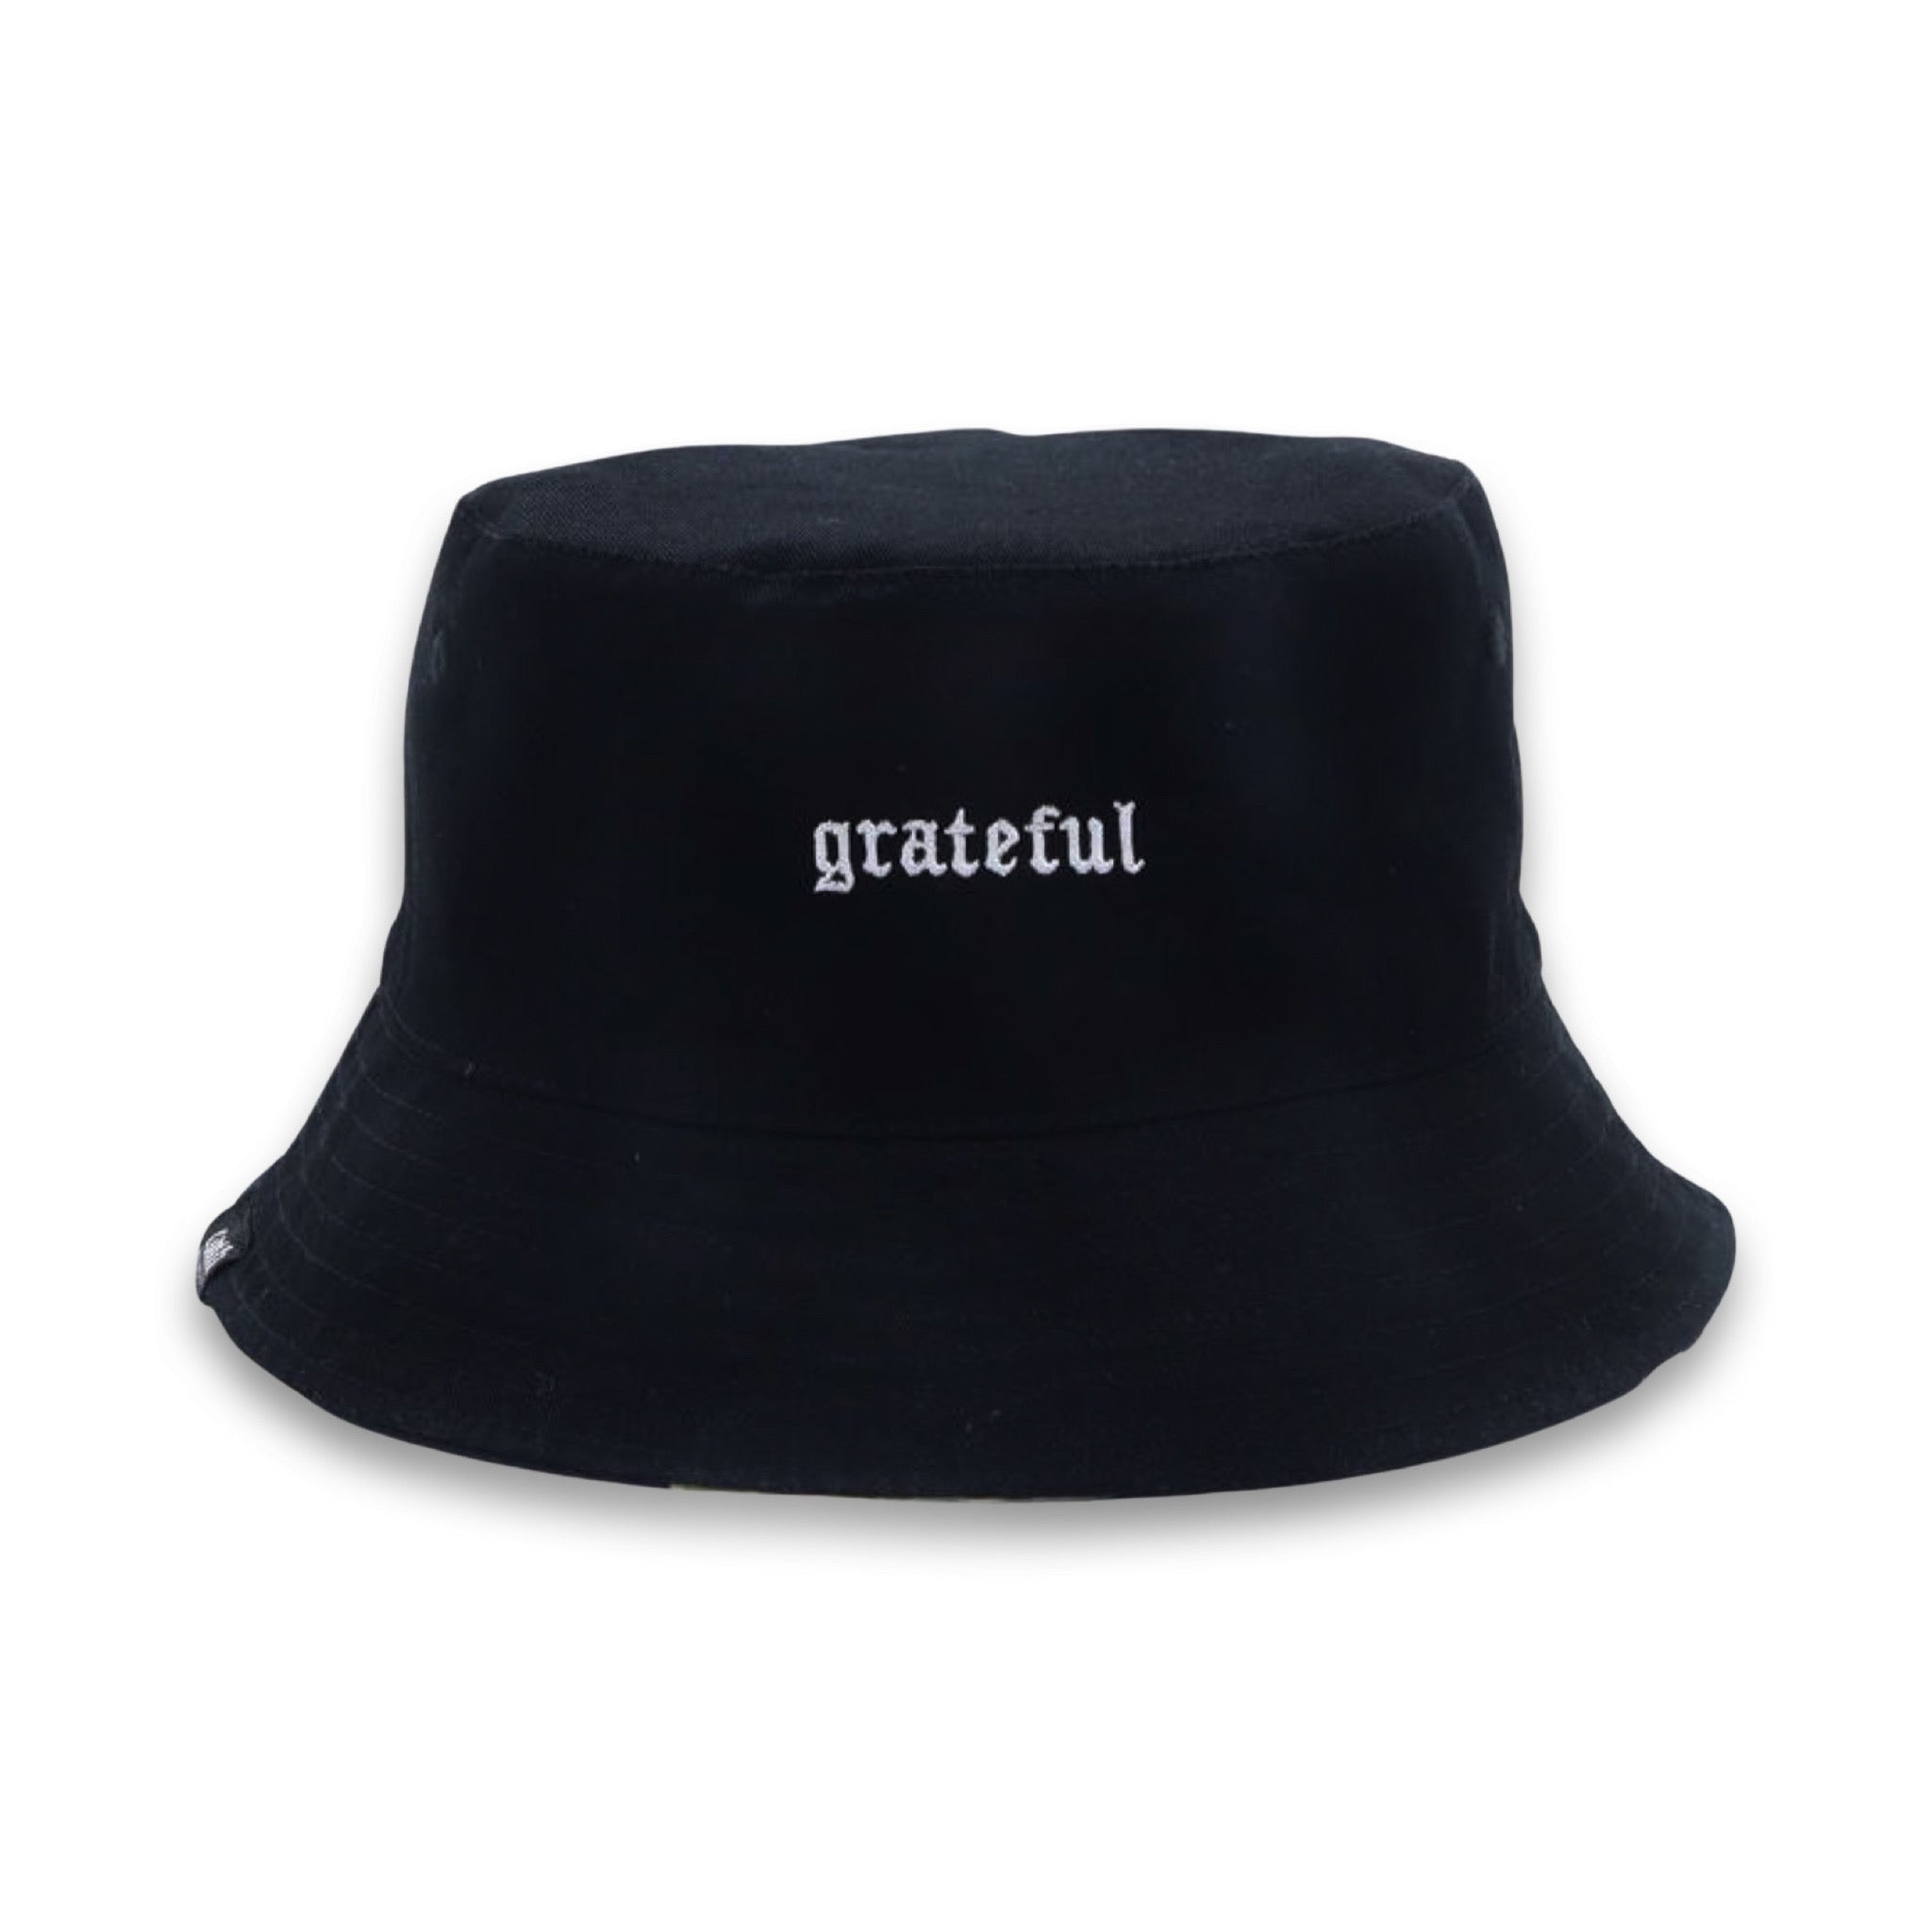 Camo Reversible Bucket Hat